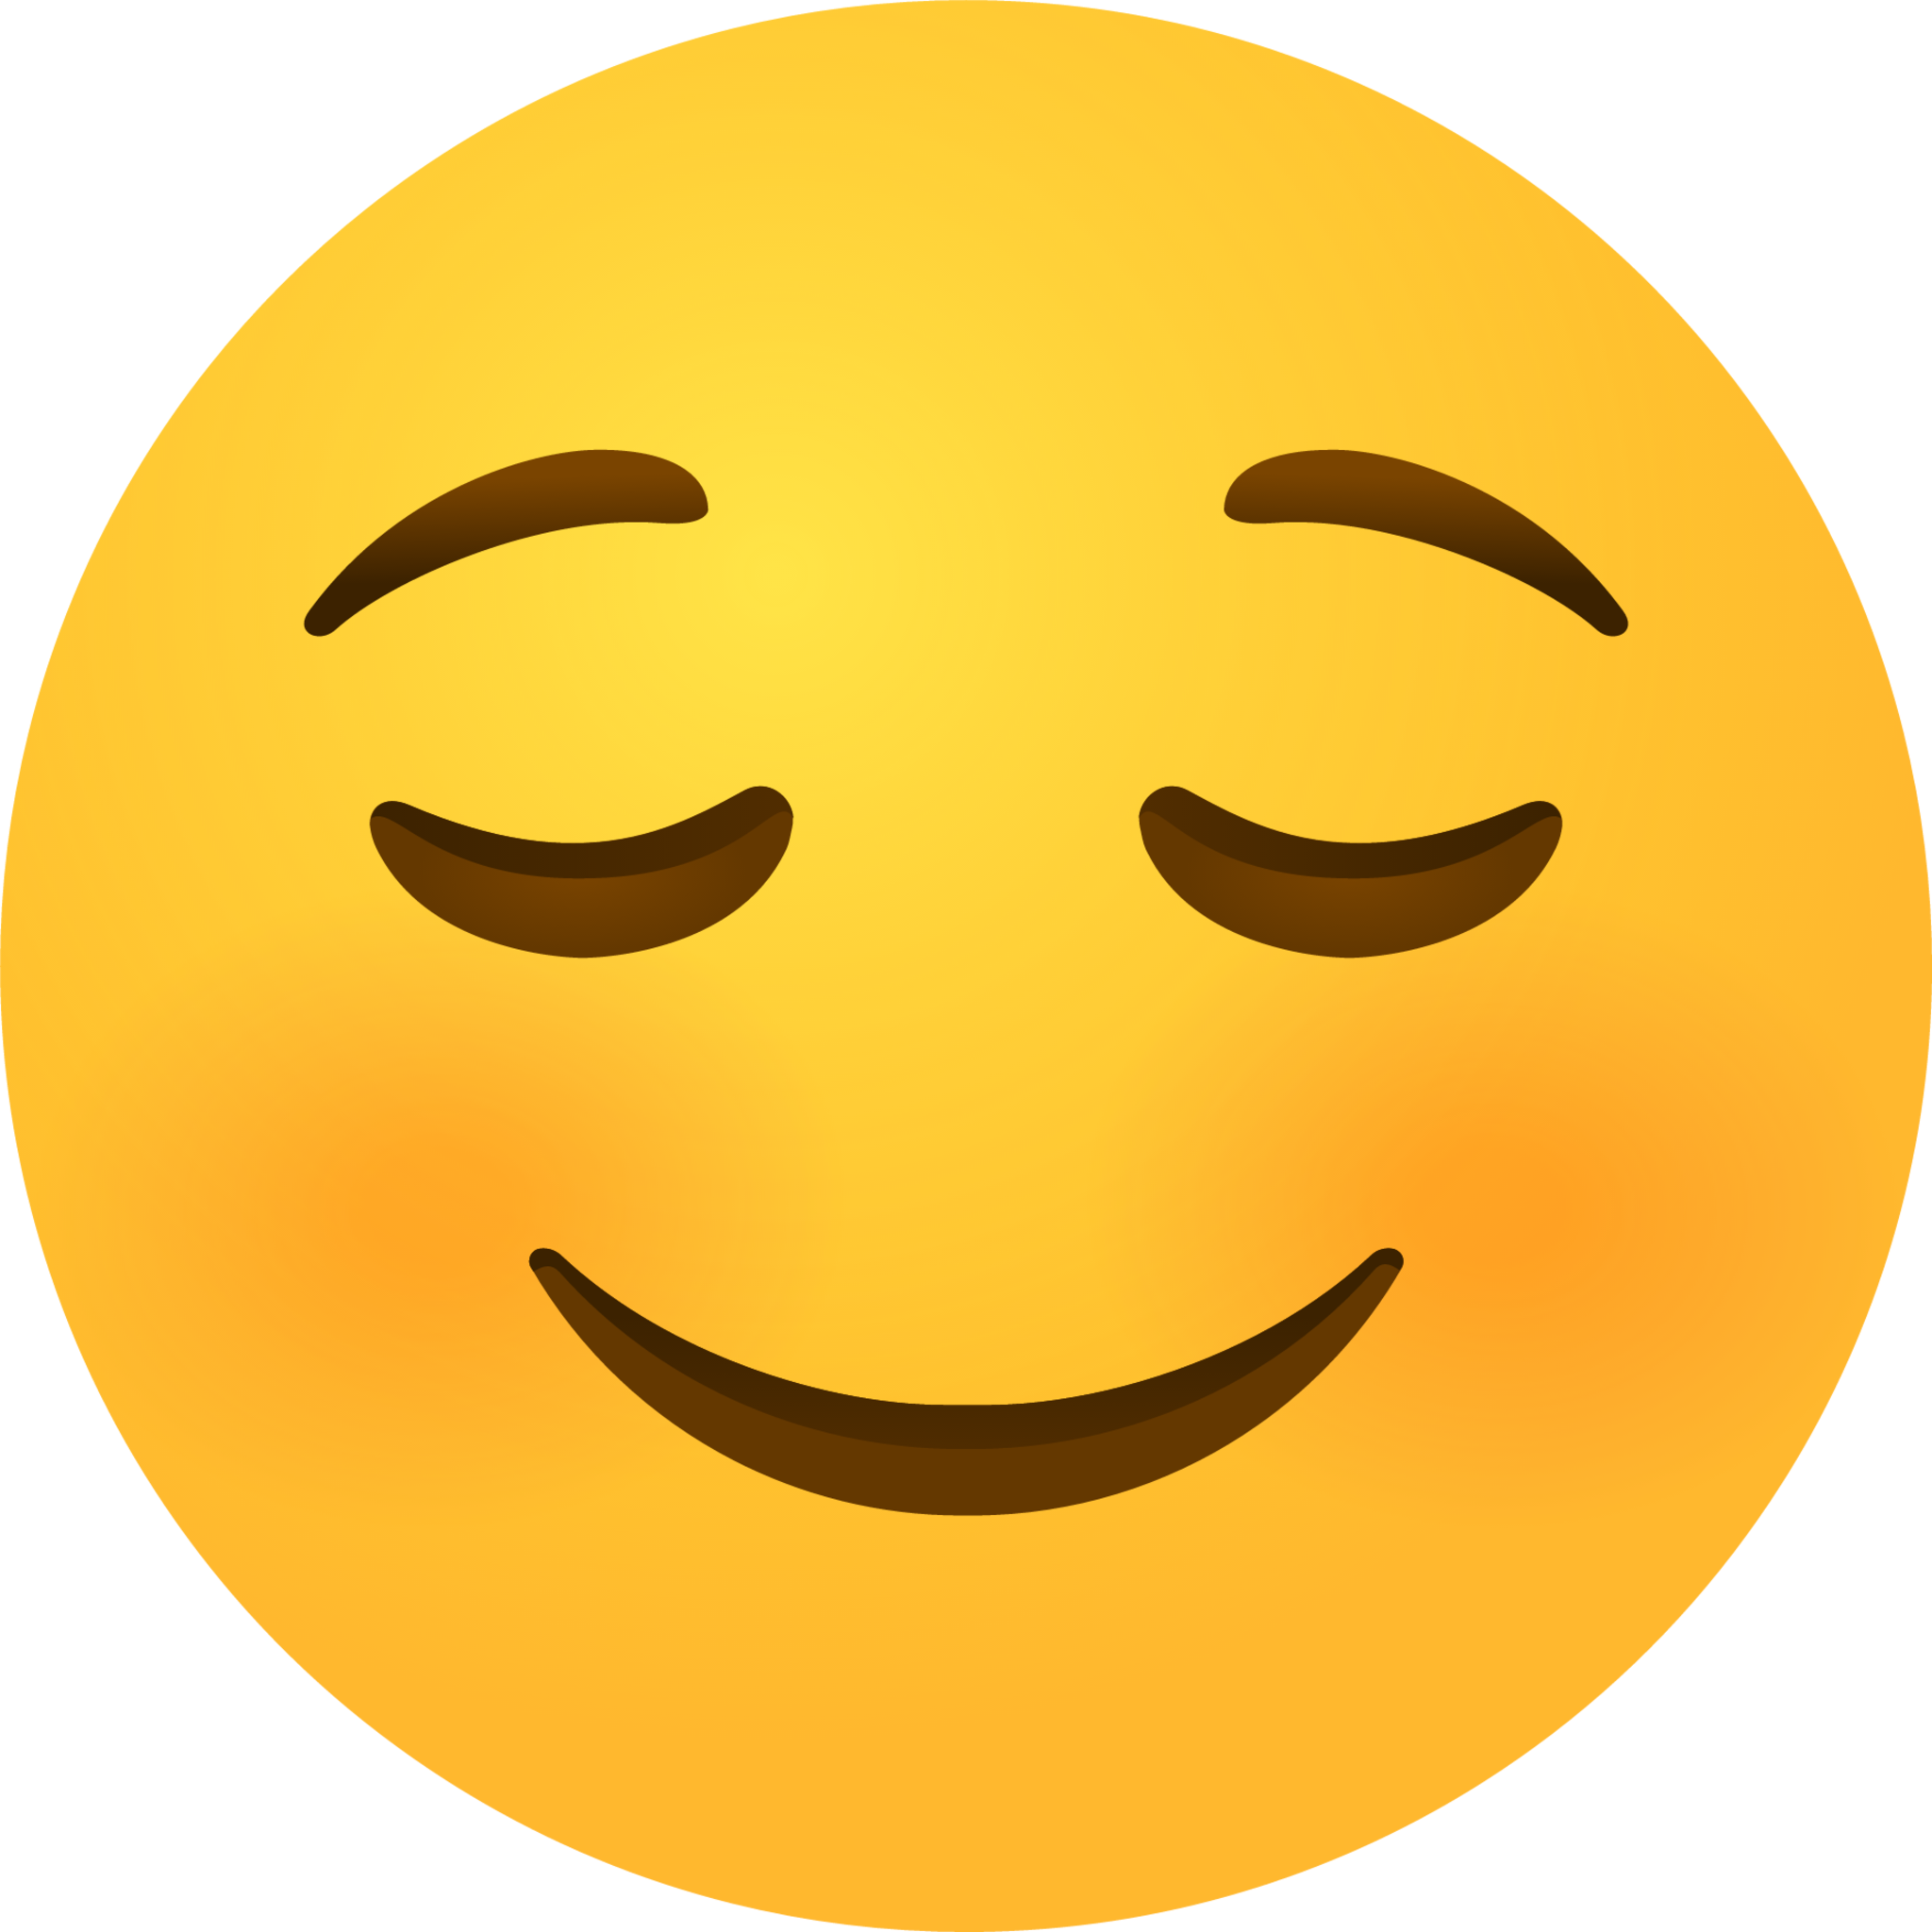 Relieved face emoji emoji